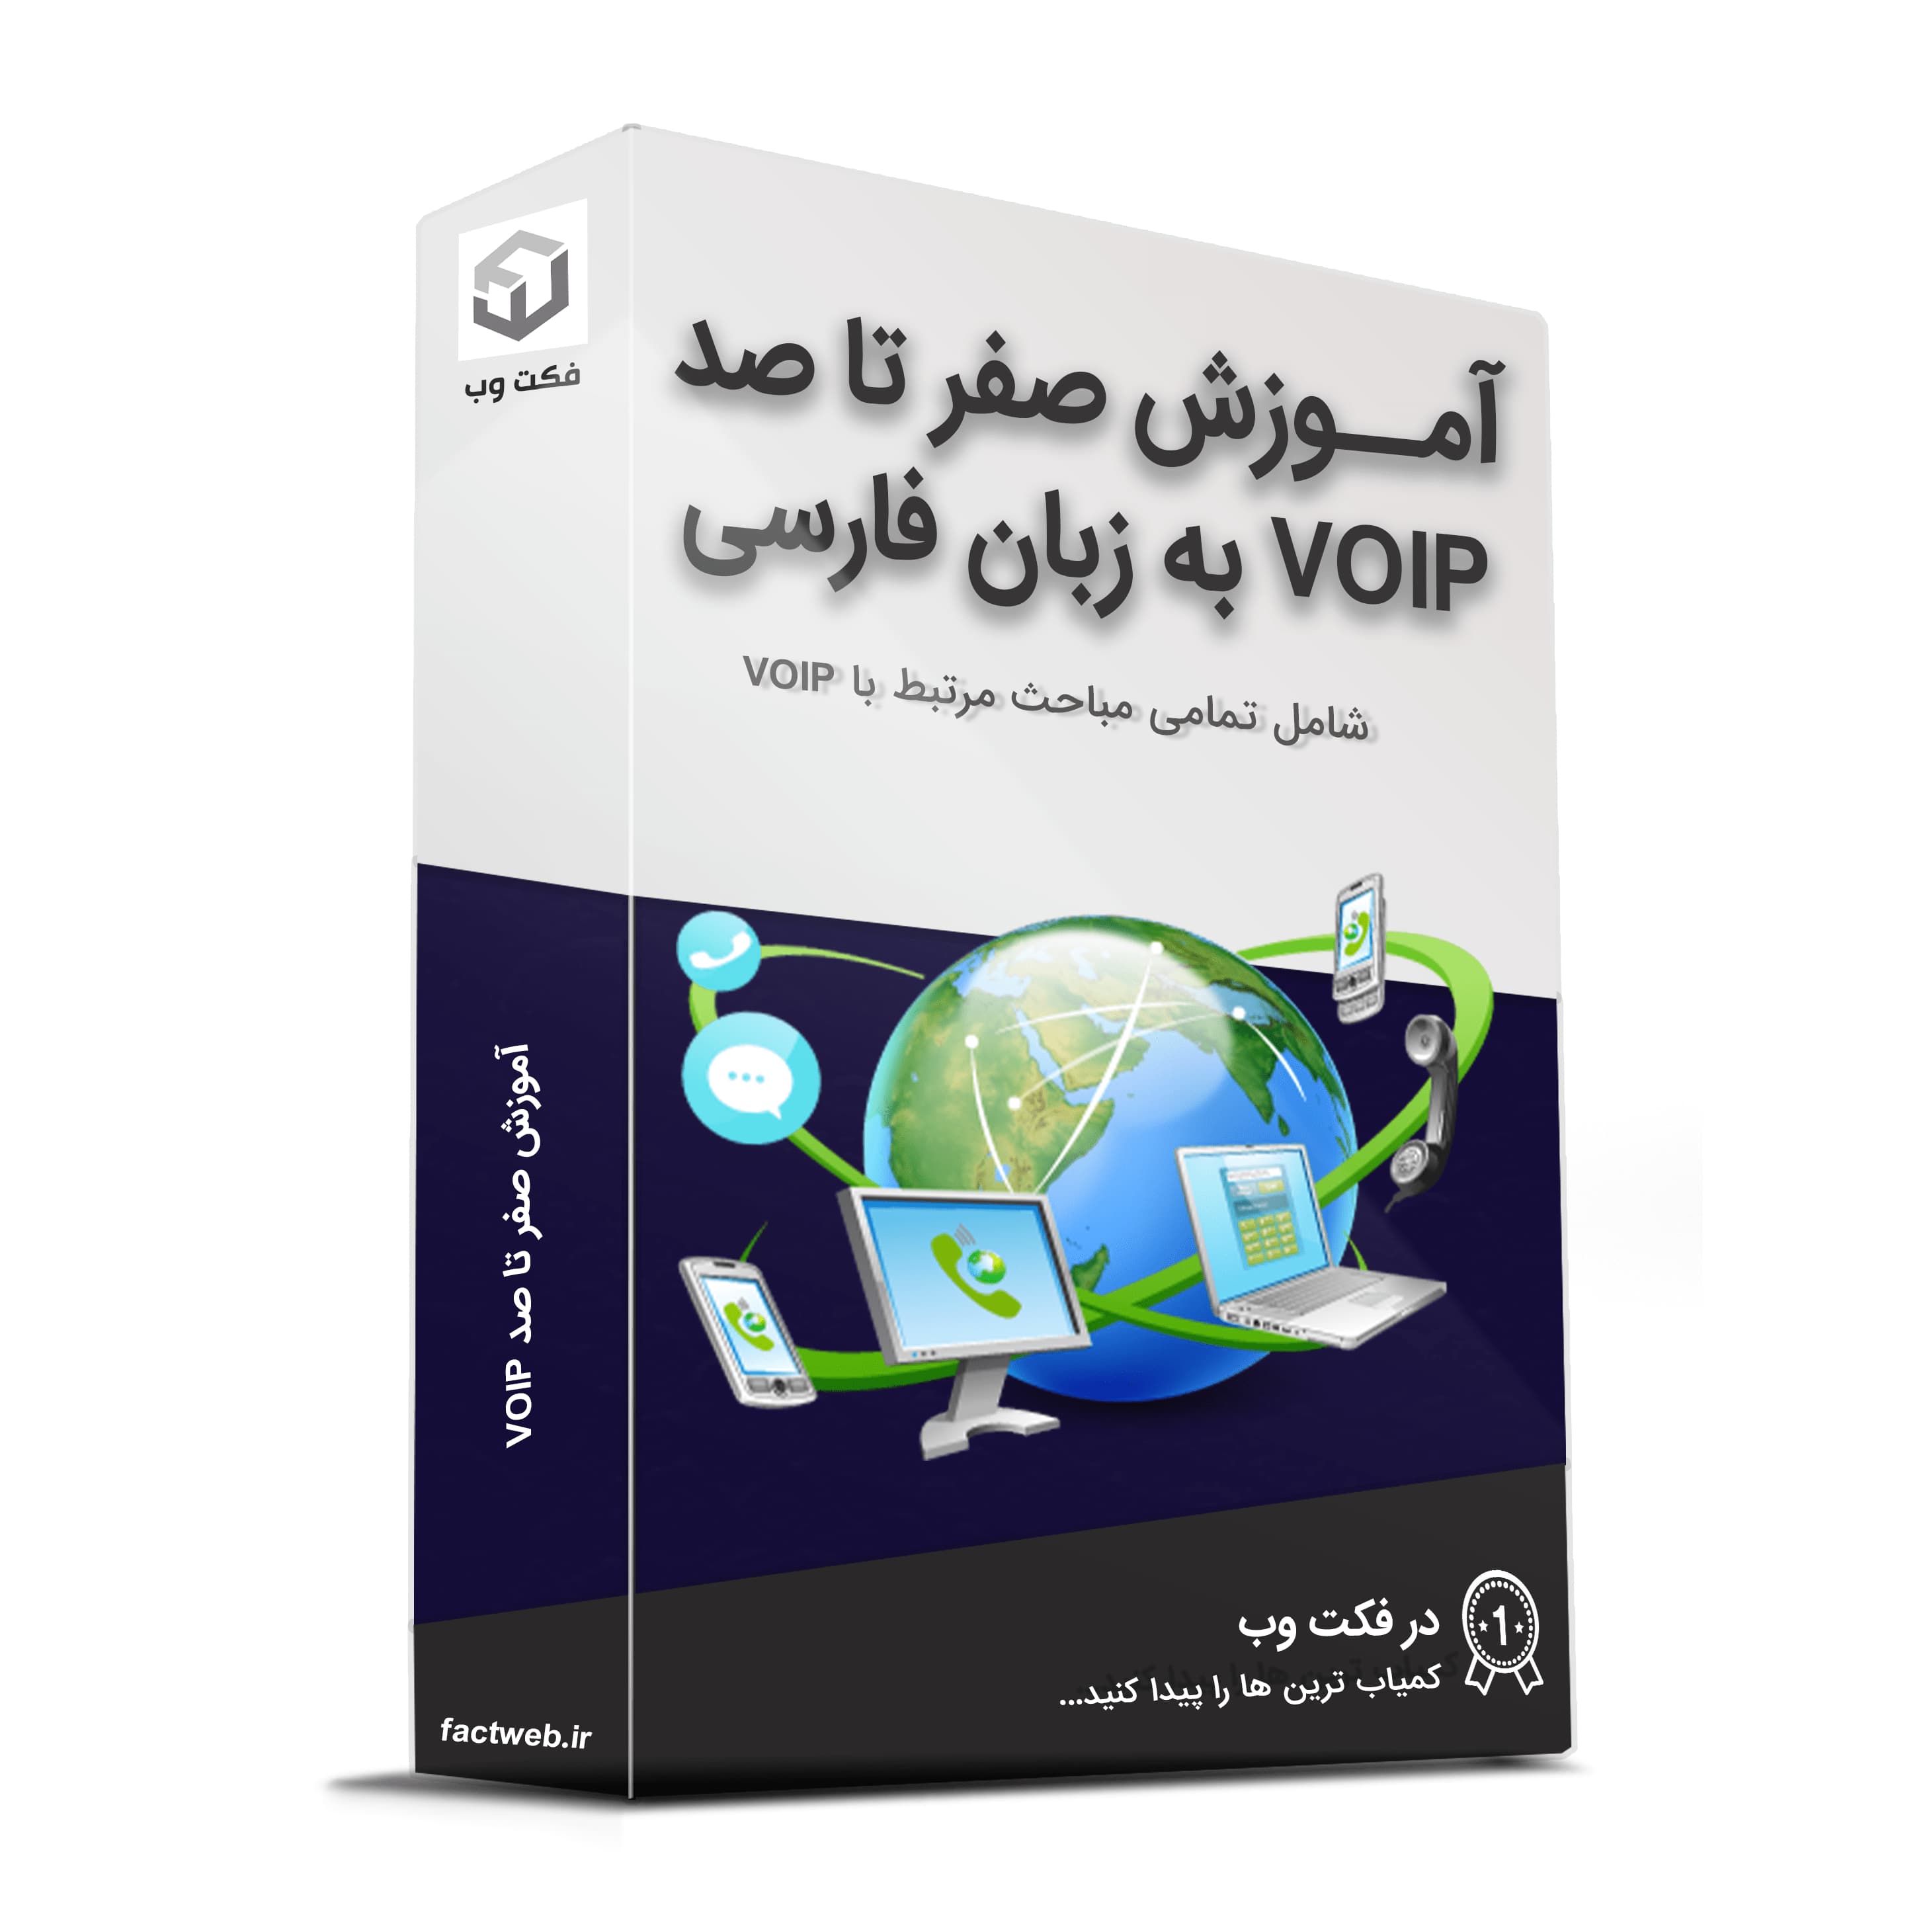 آموزش صفر تا صد VOIP به زبان فارسی